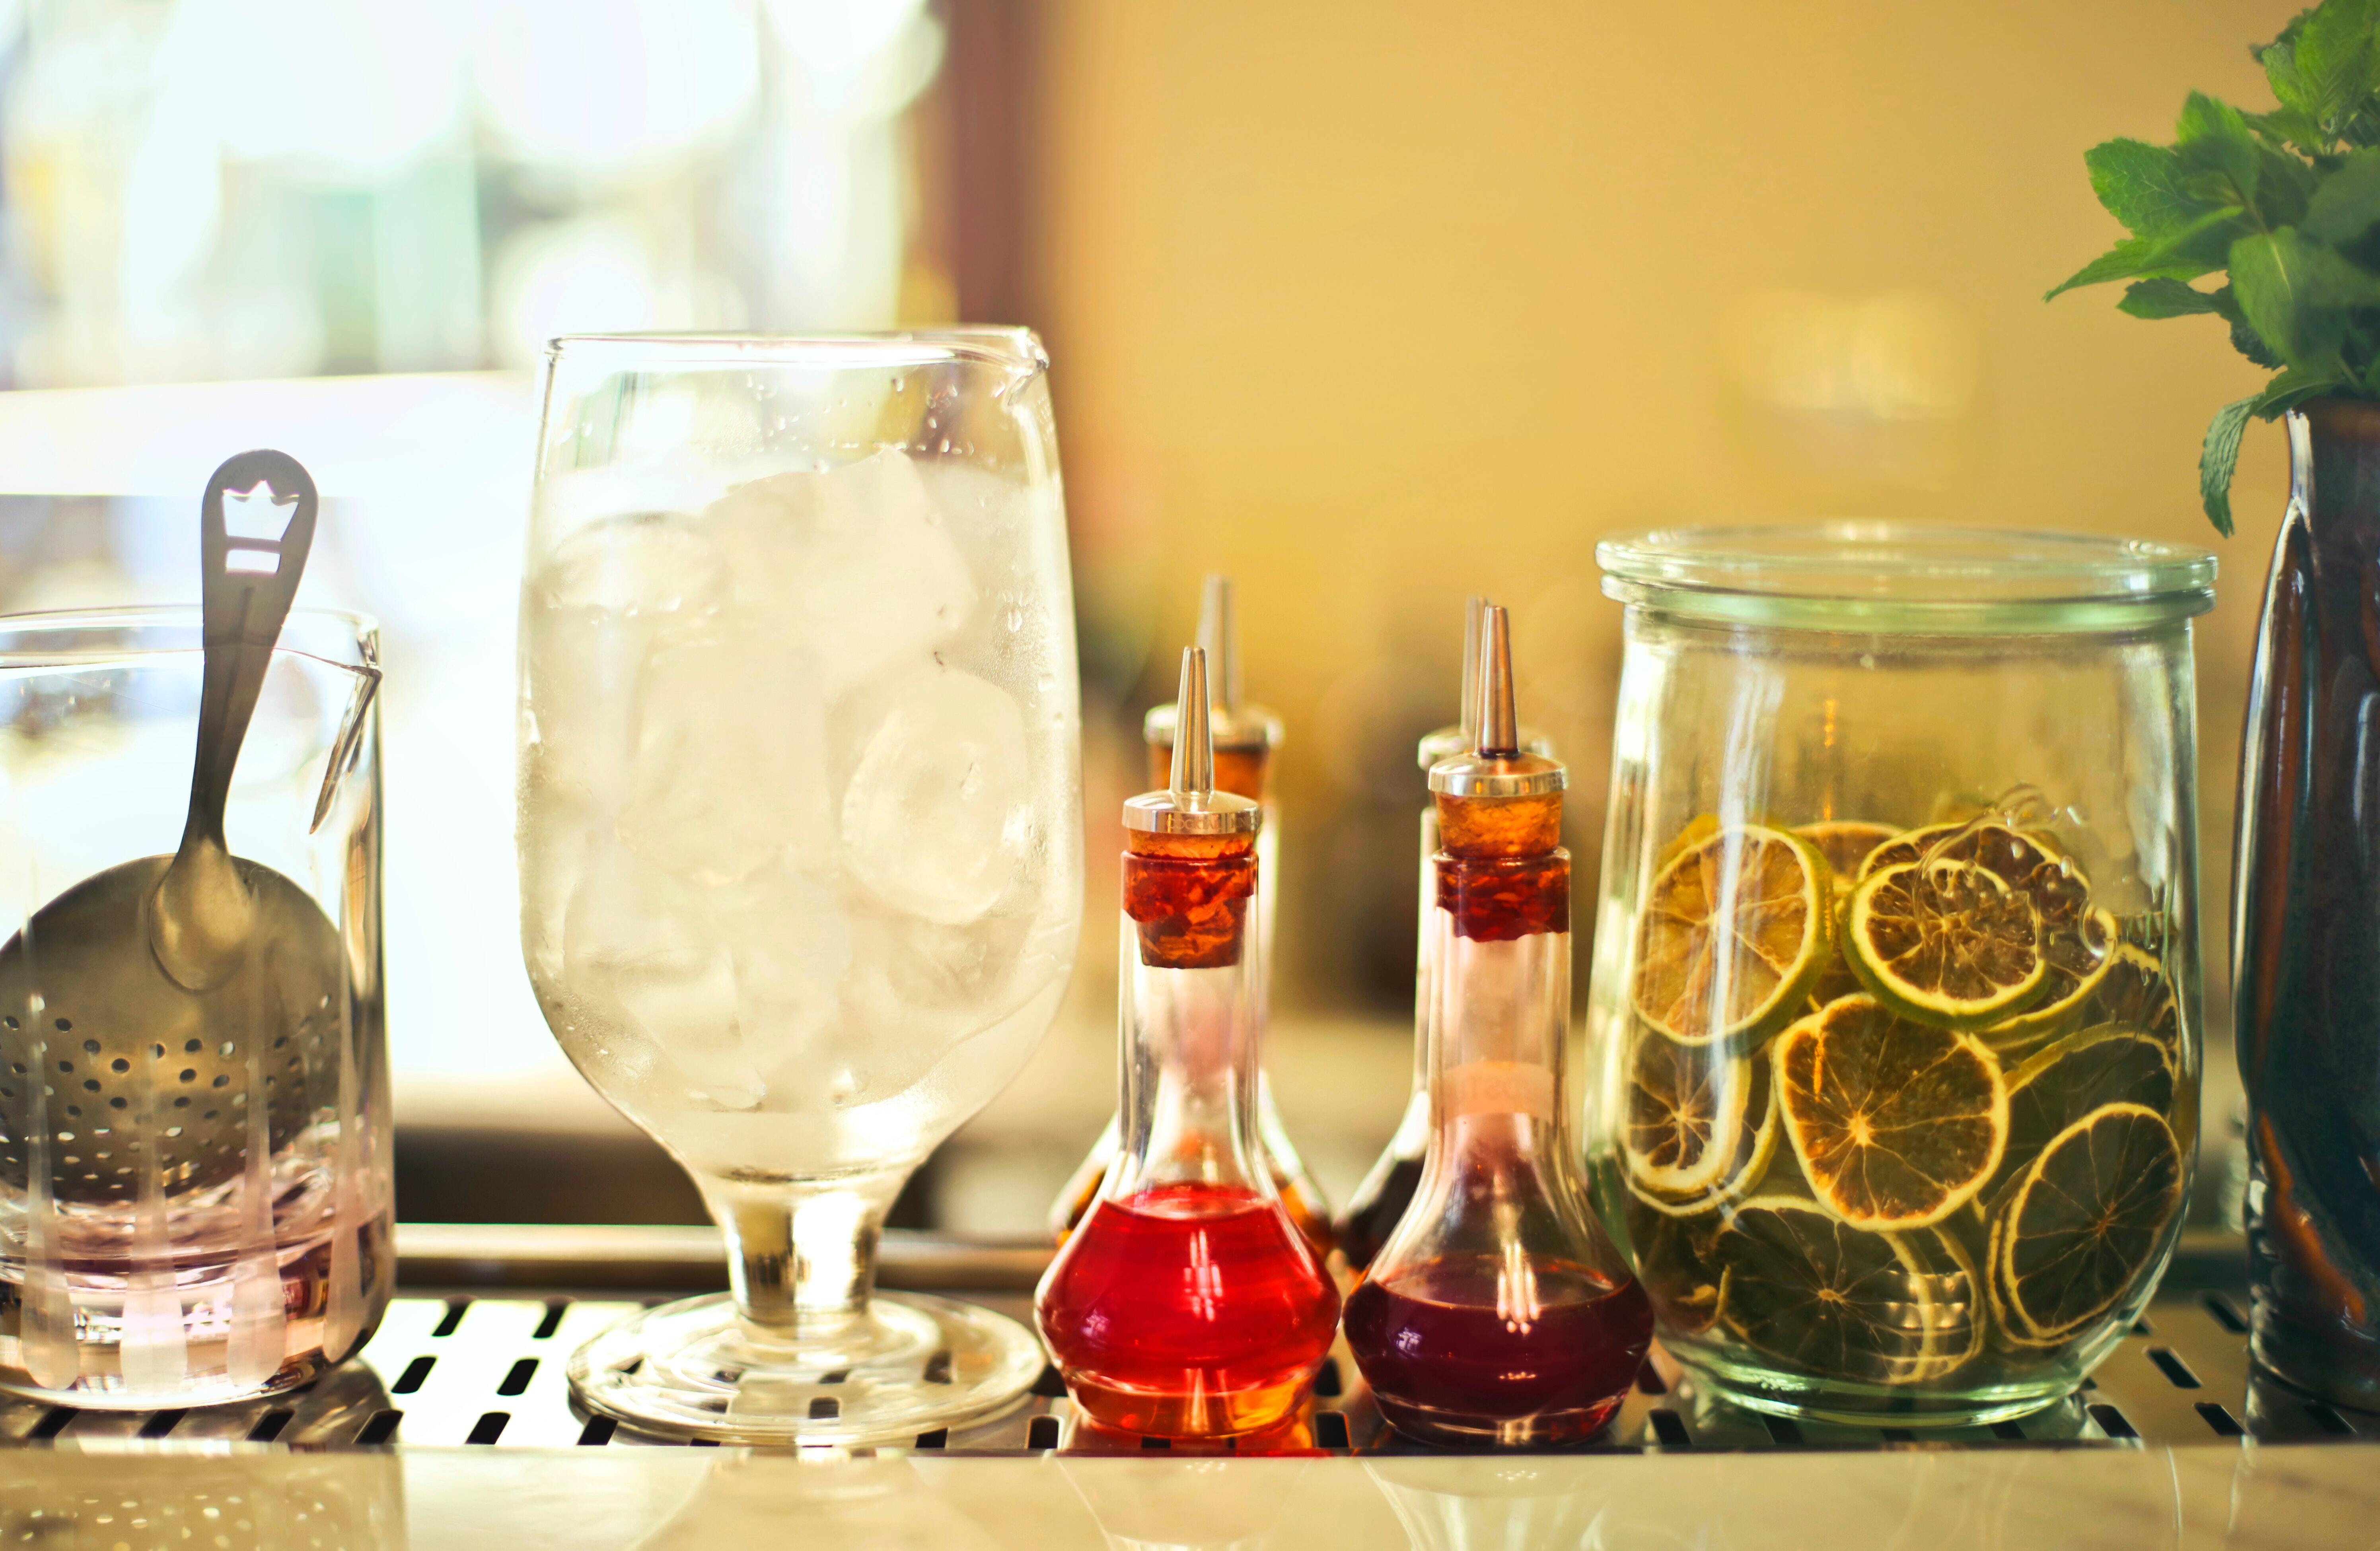 How to make a good homemade liquor easily 